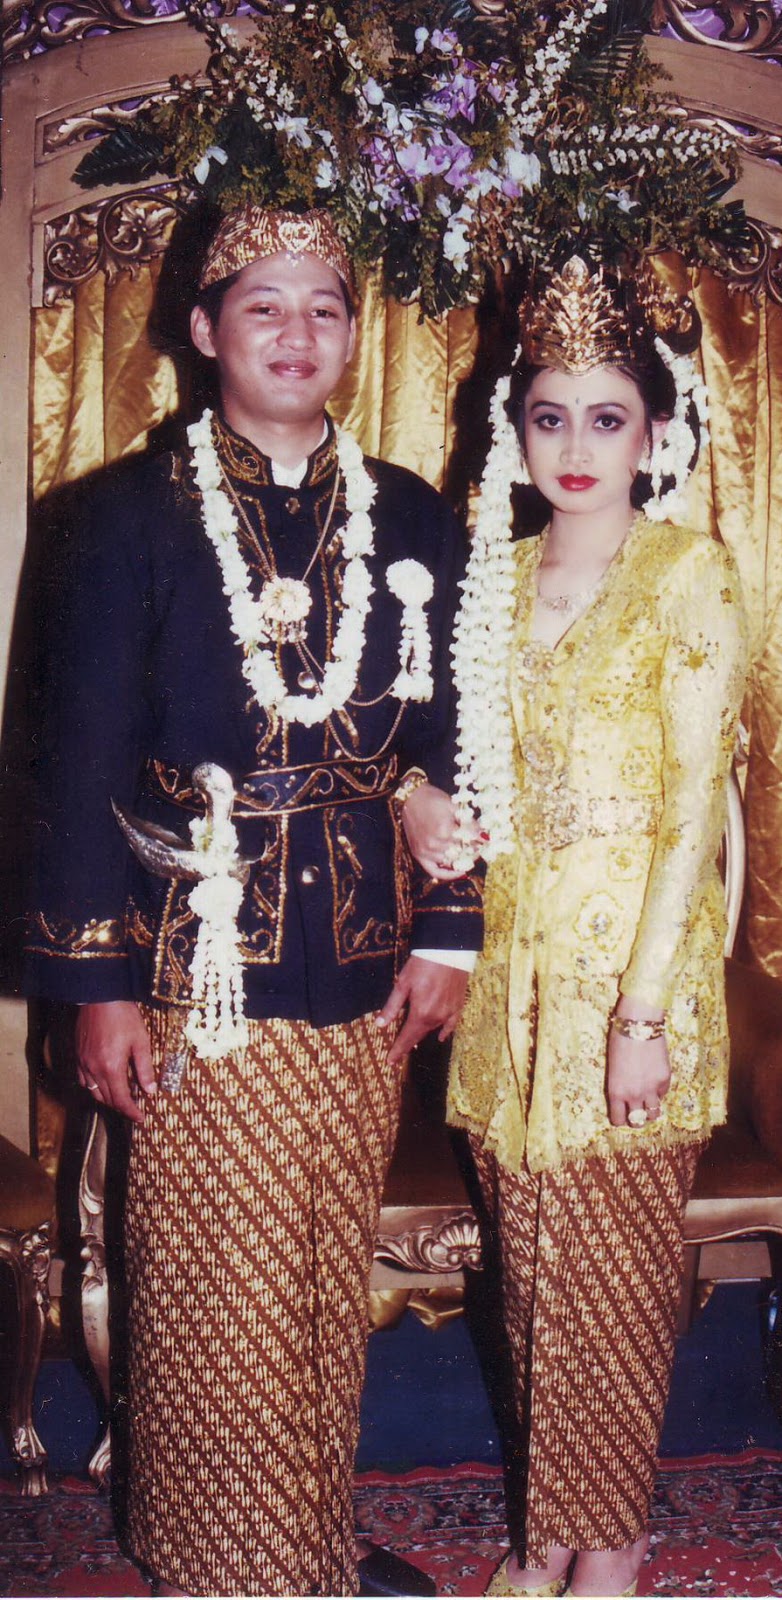 Perkawinan Serta Makna Riasan Dan Pakaian Pengantin Adat Yogyakarta